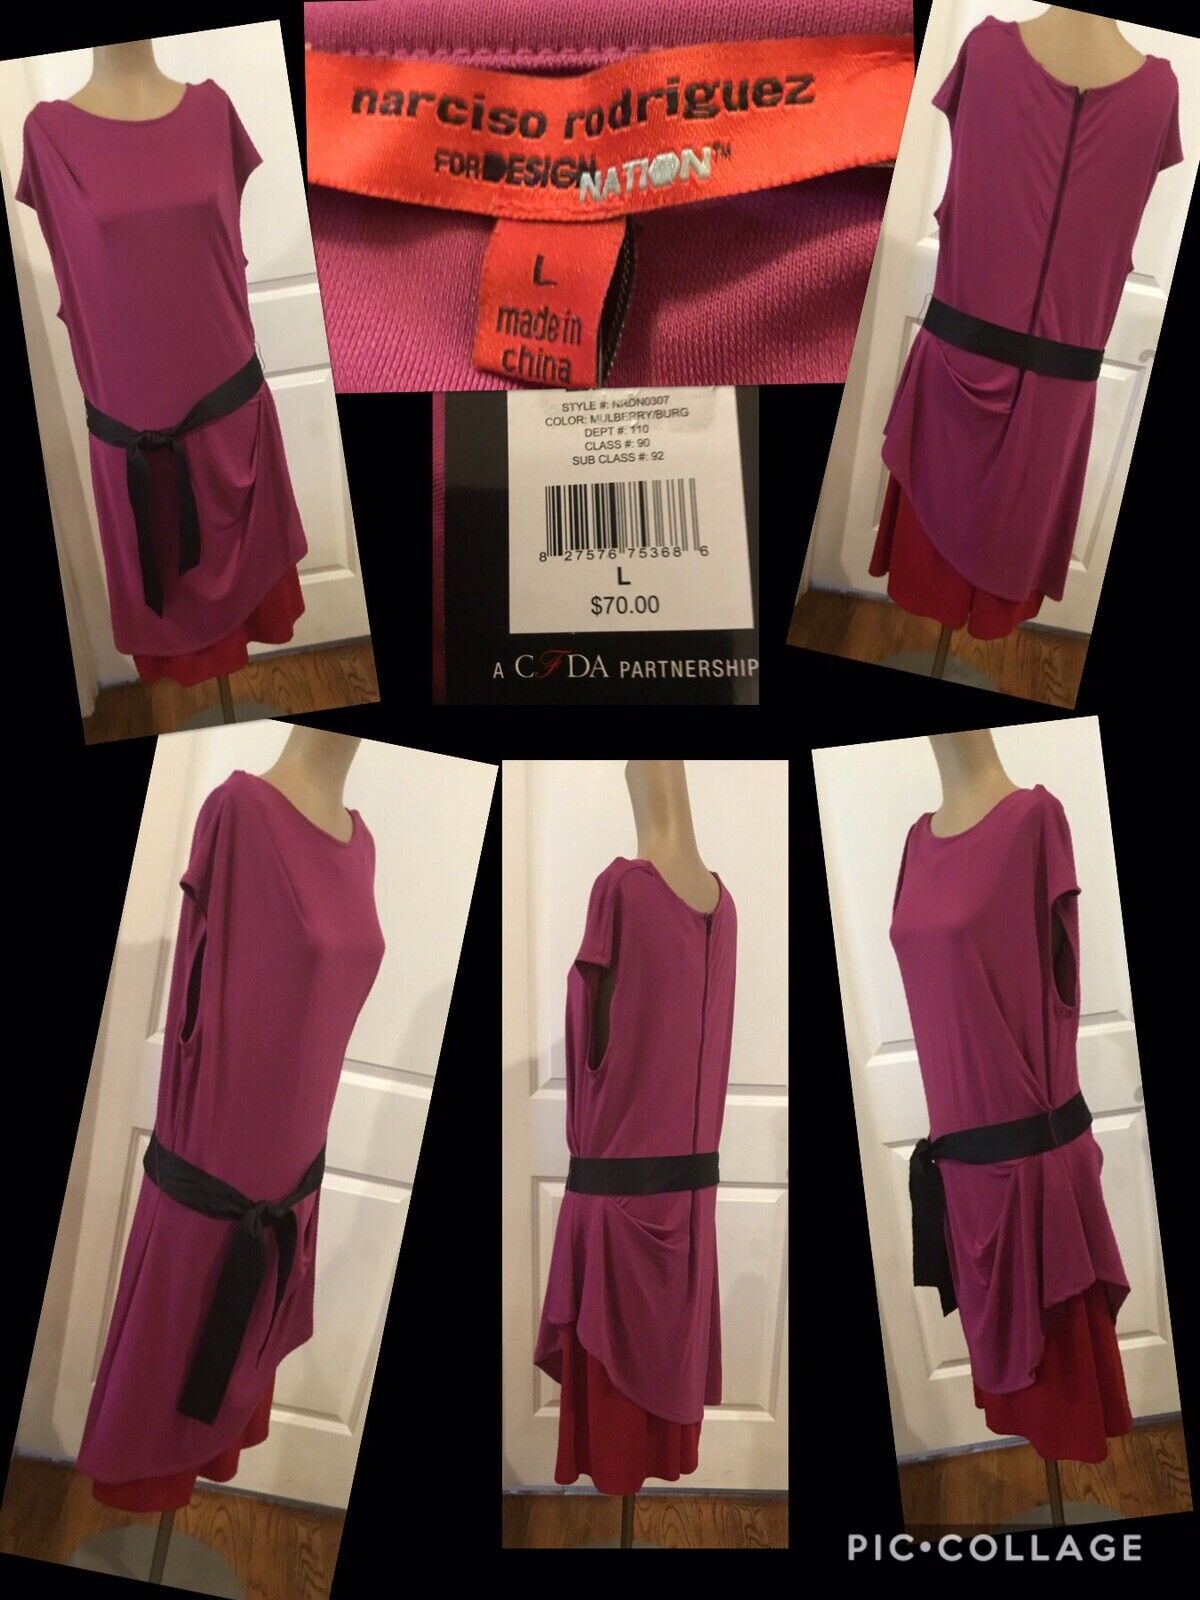 NEW Narcisco Rodriguez Designer Dress Size Large Sleeveless Retail $70 New W/T